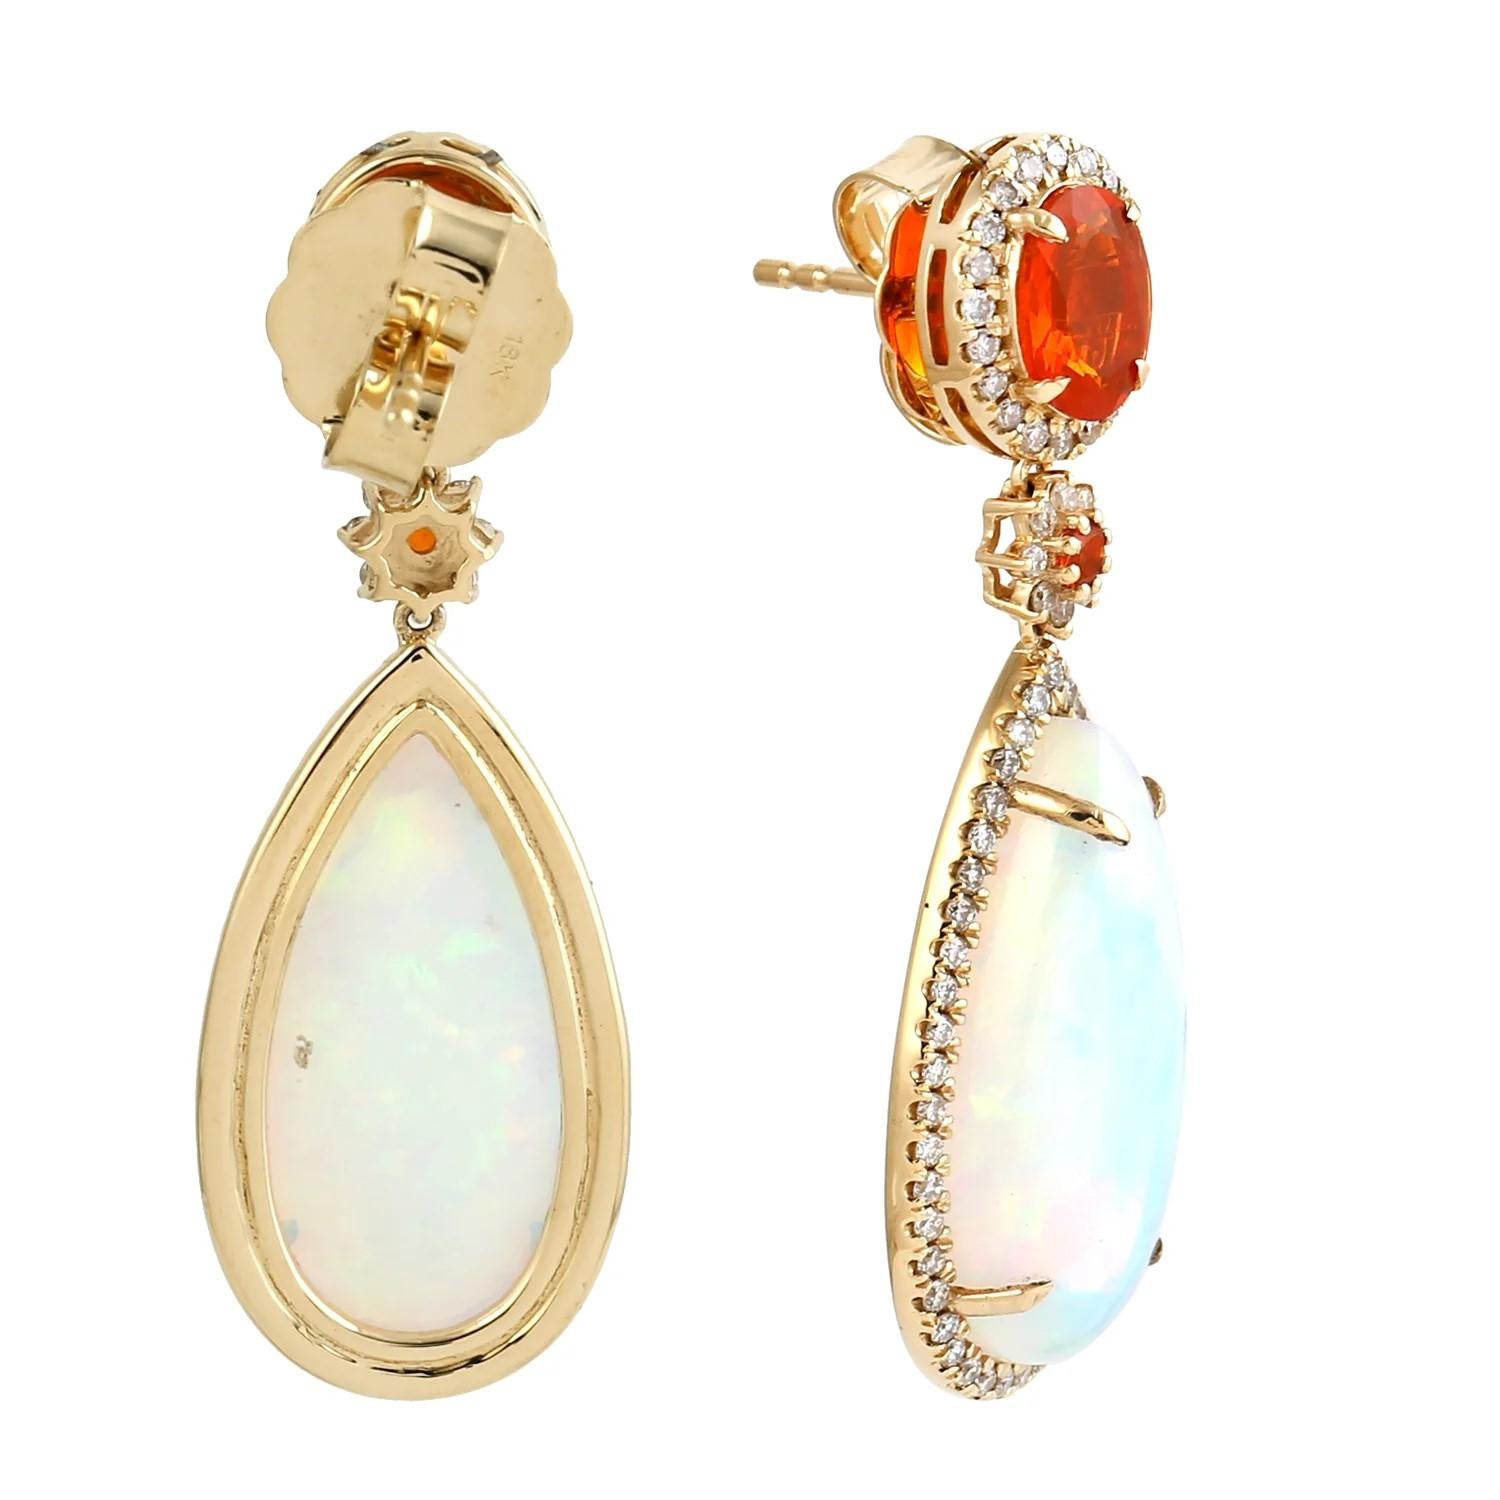 Mixed Cut 11.76 carat Ethiopian Opal Fire Opal Diamond 18 Karat Gold Earrings For Sale